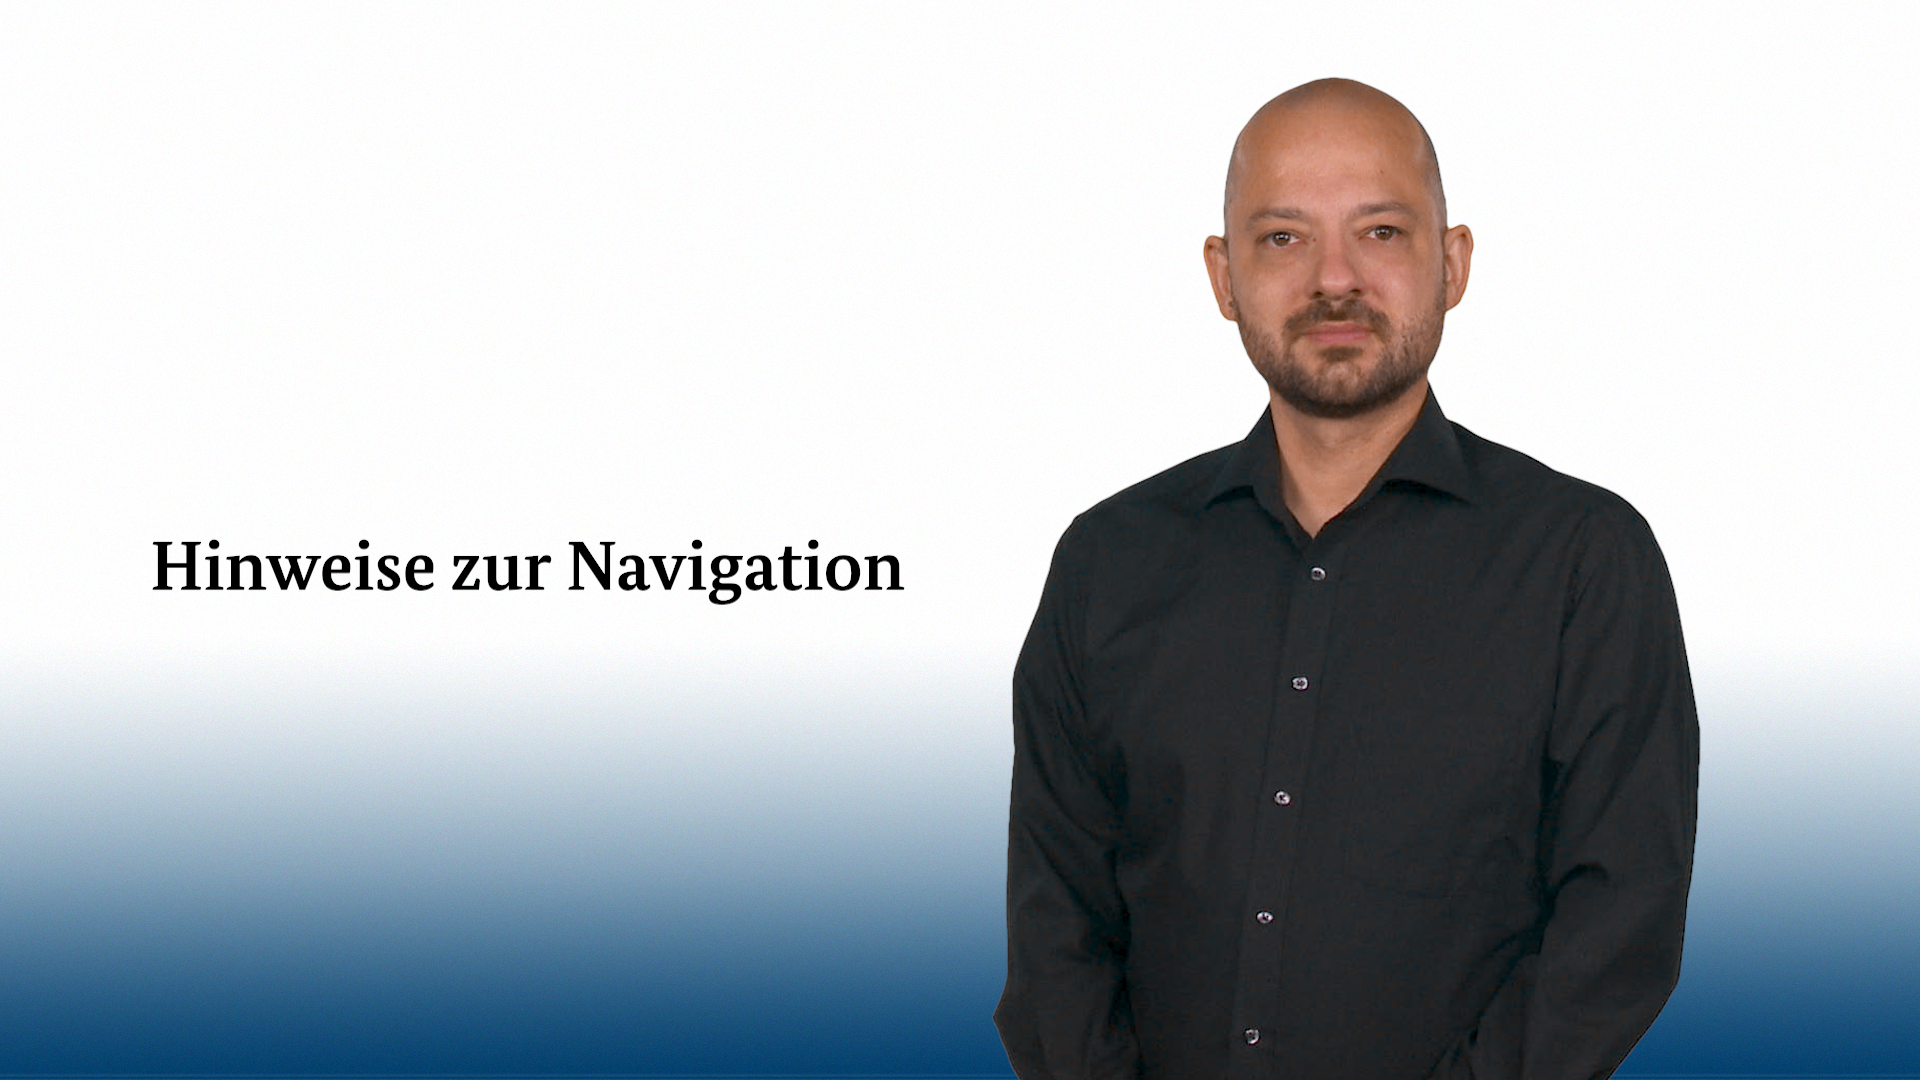 Startbild zum Video zur Navigation des Deutschlandatlasses in deutscher Gebärdensprache.